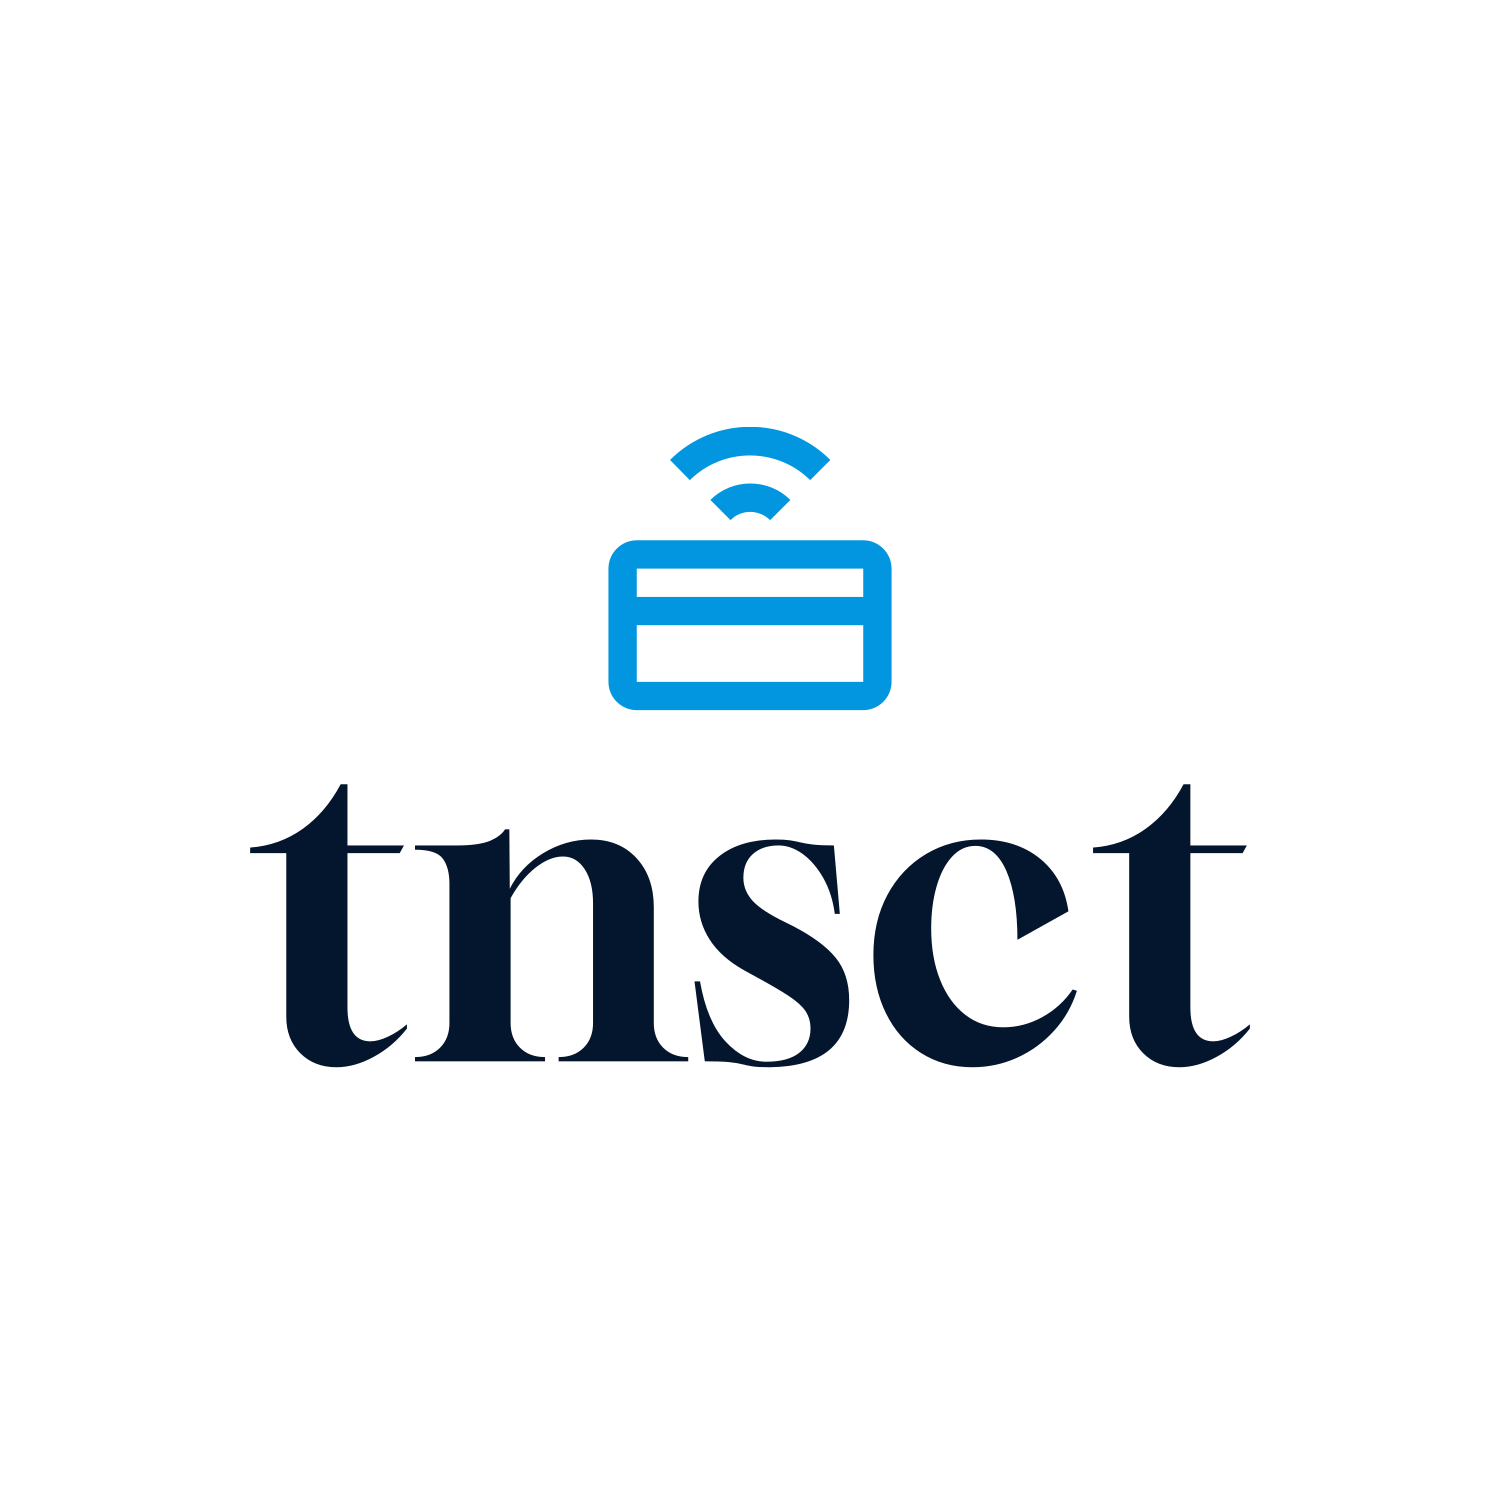 tnsct logo